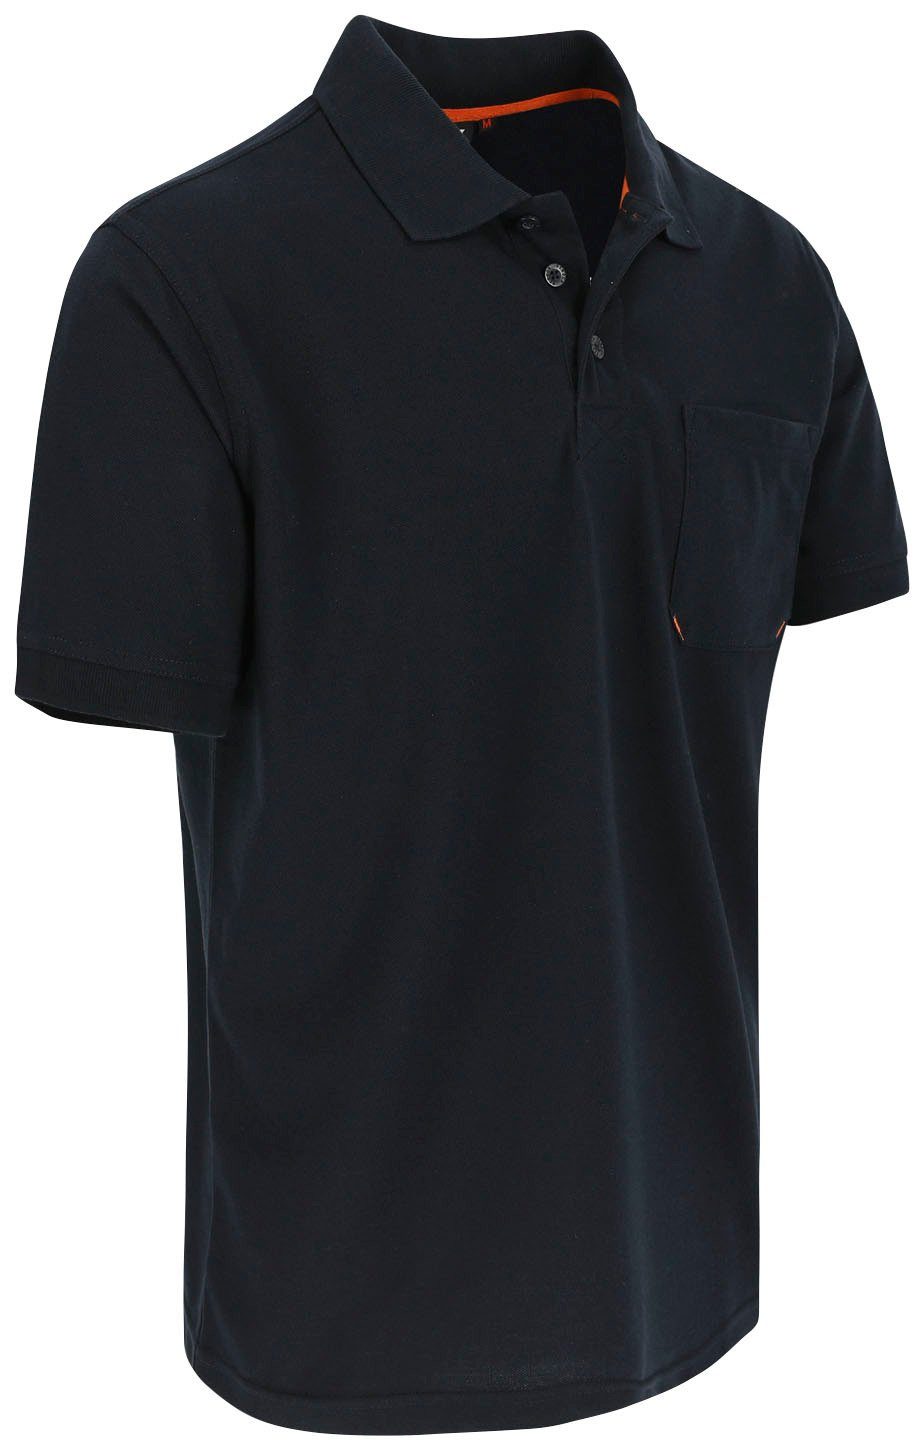 Rippstrick-Kragen Brusttasche, 1 verschiedene Poloshirt und Polohemd Kurzärmlig Farben Leo marine Bündchen, Herock